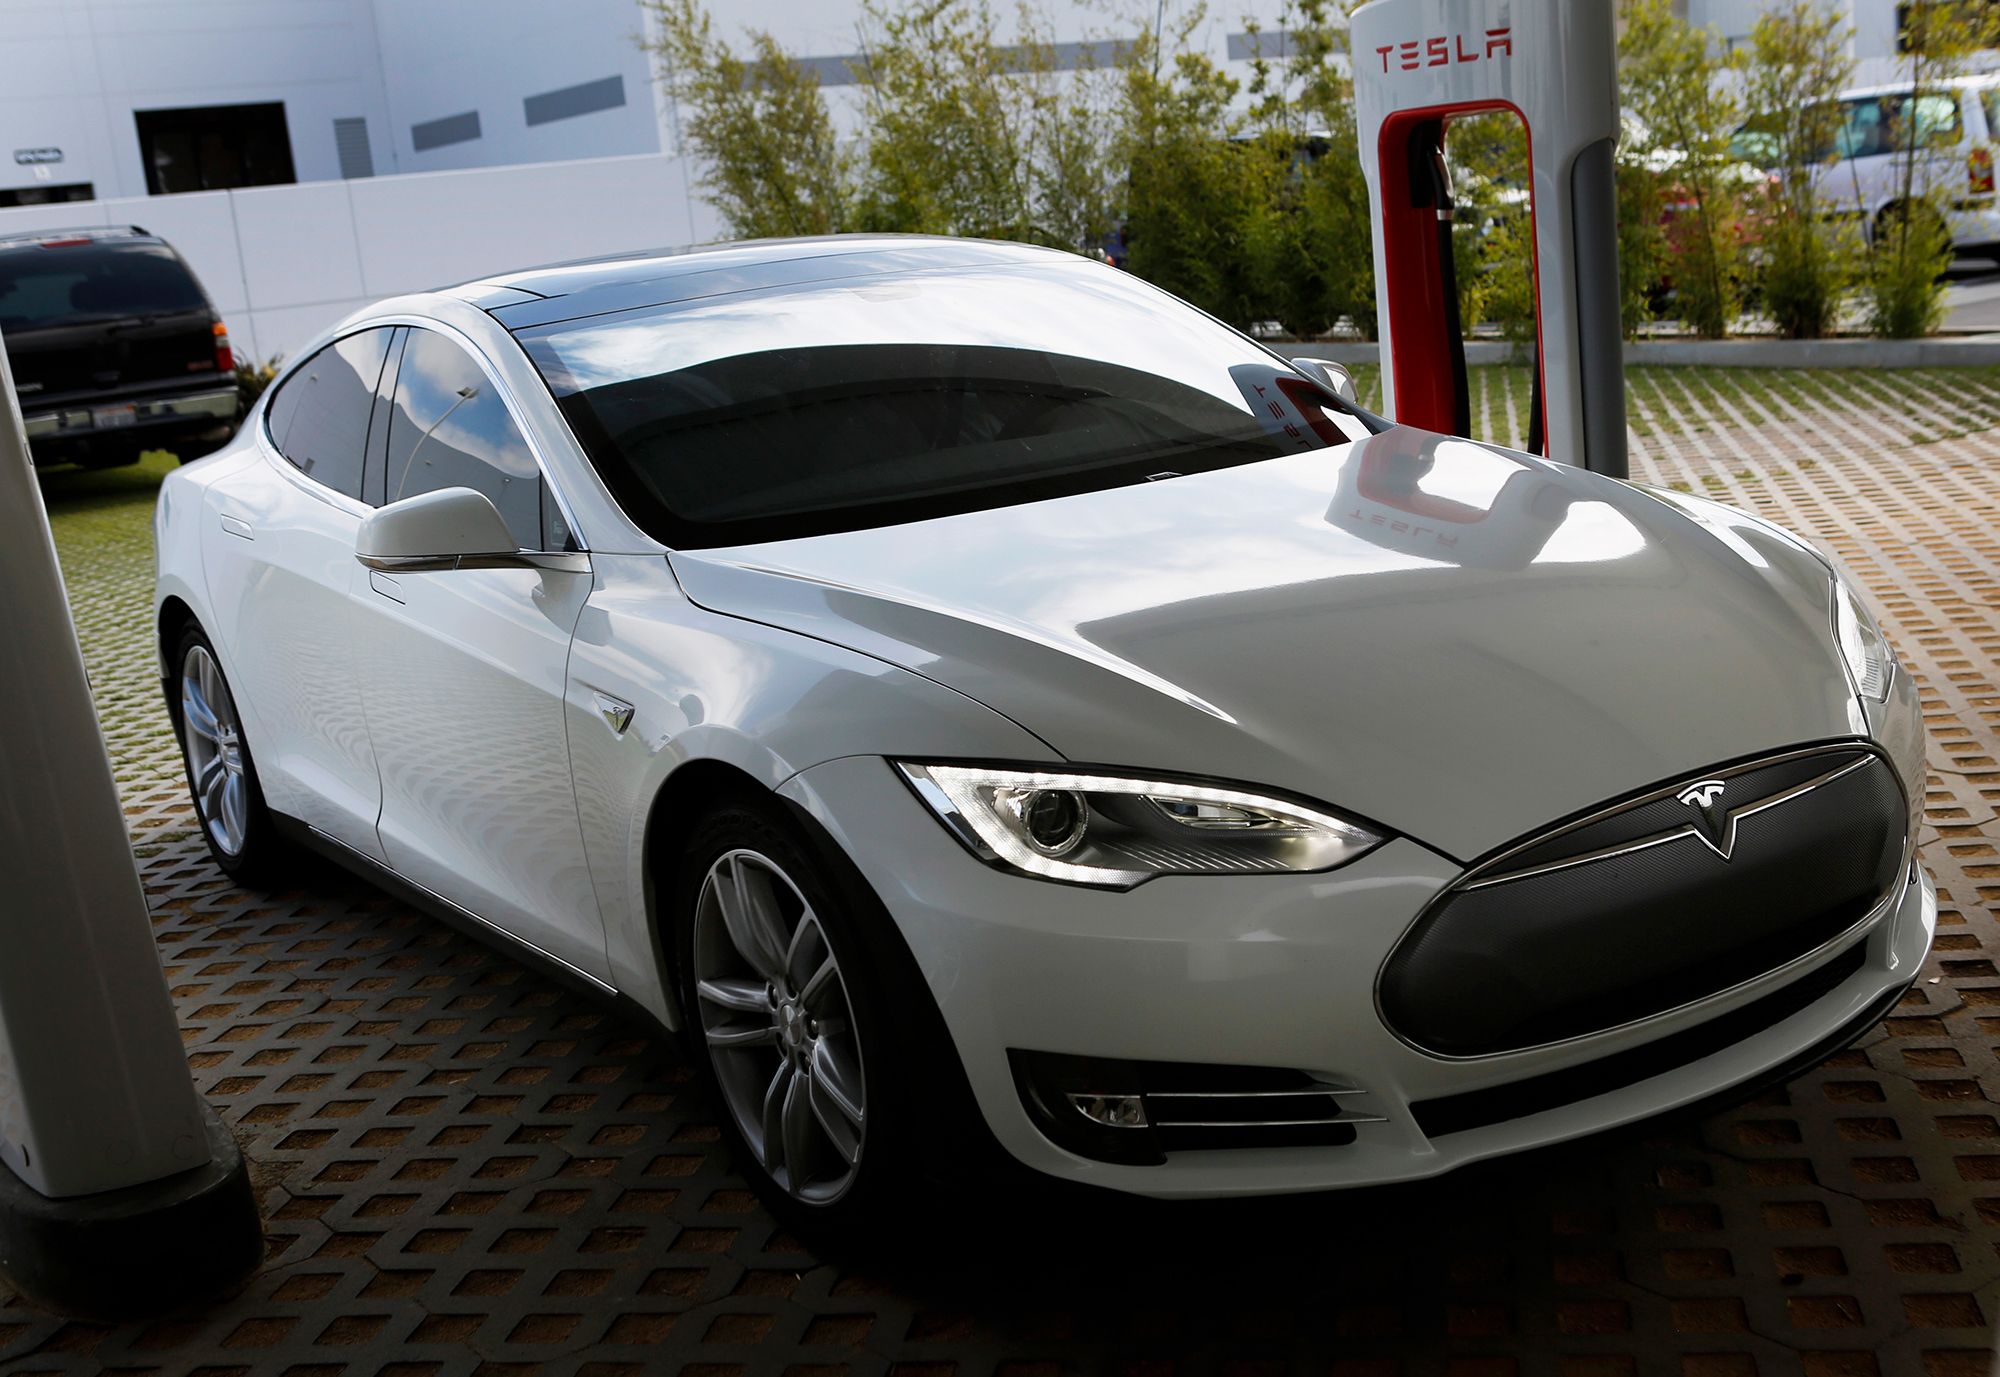 Tesla recalls 135,000 cars after pushing back against regulators | CNN  Business